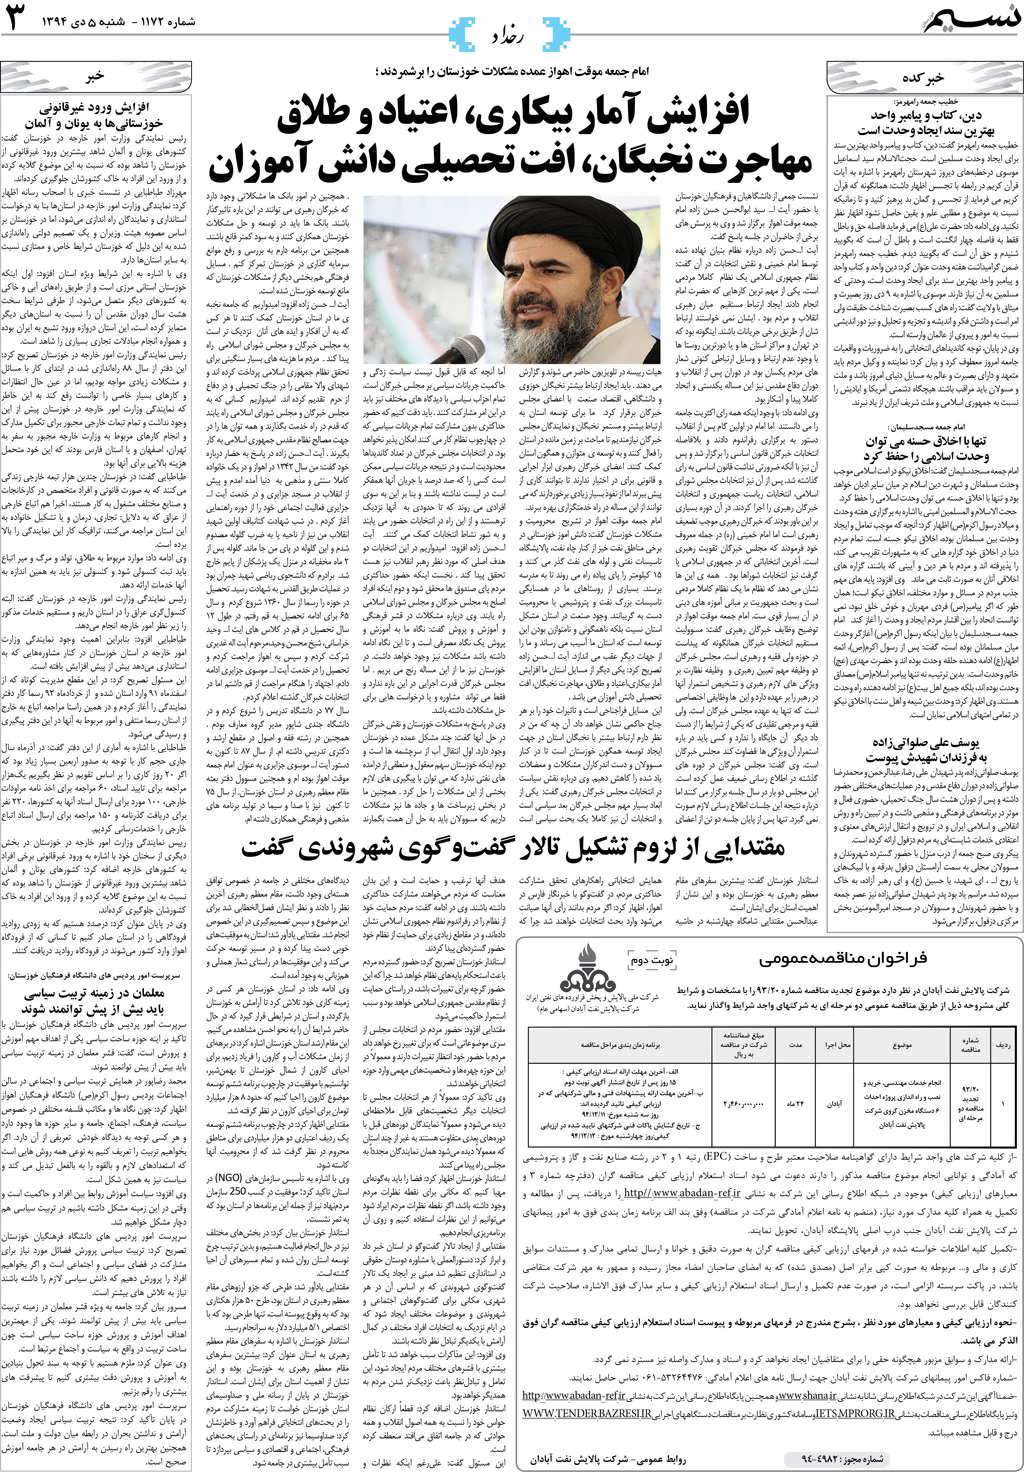 صفحه رخداد روزنامه نسیم شماره 1172